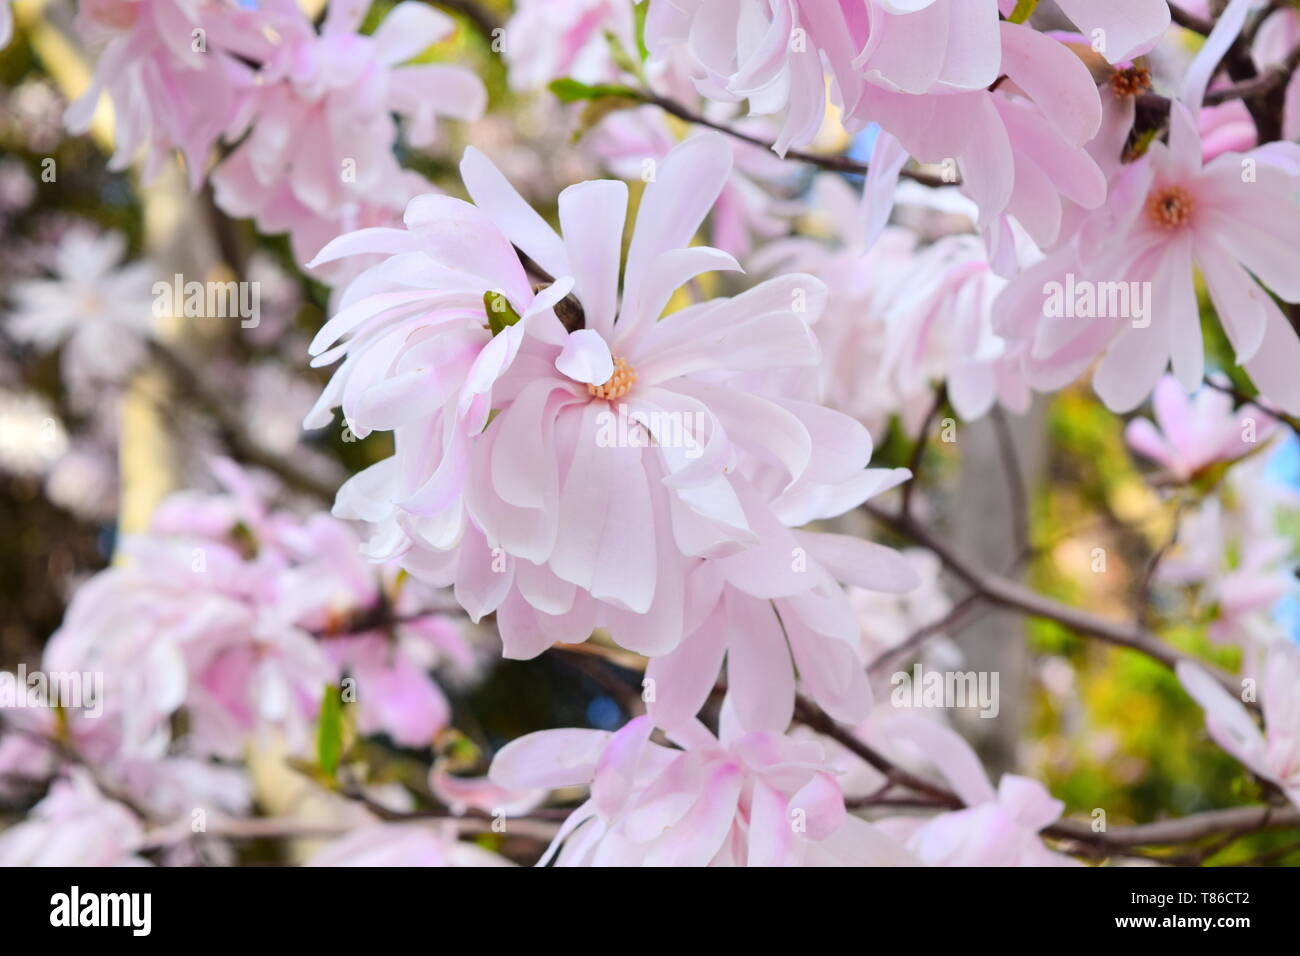 Magnolia in full bloom Stock Photo